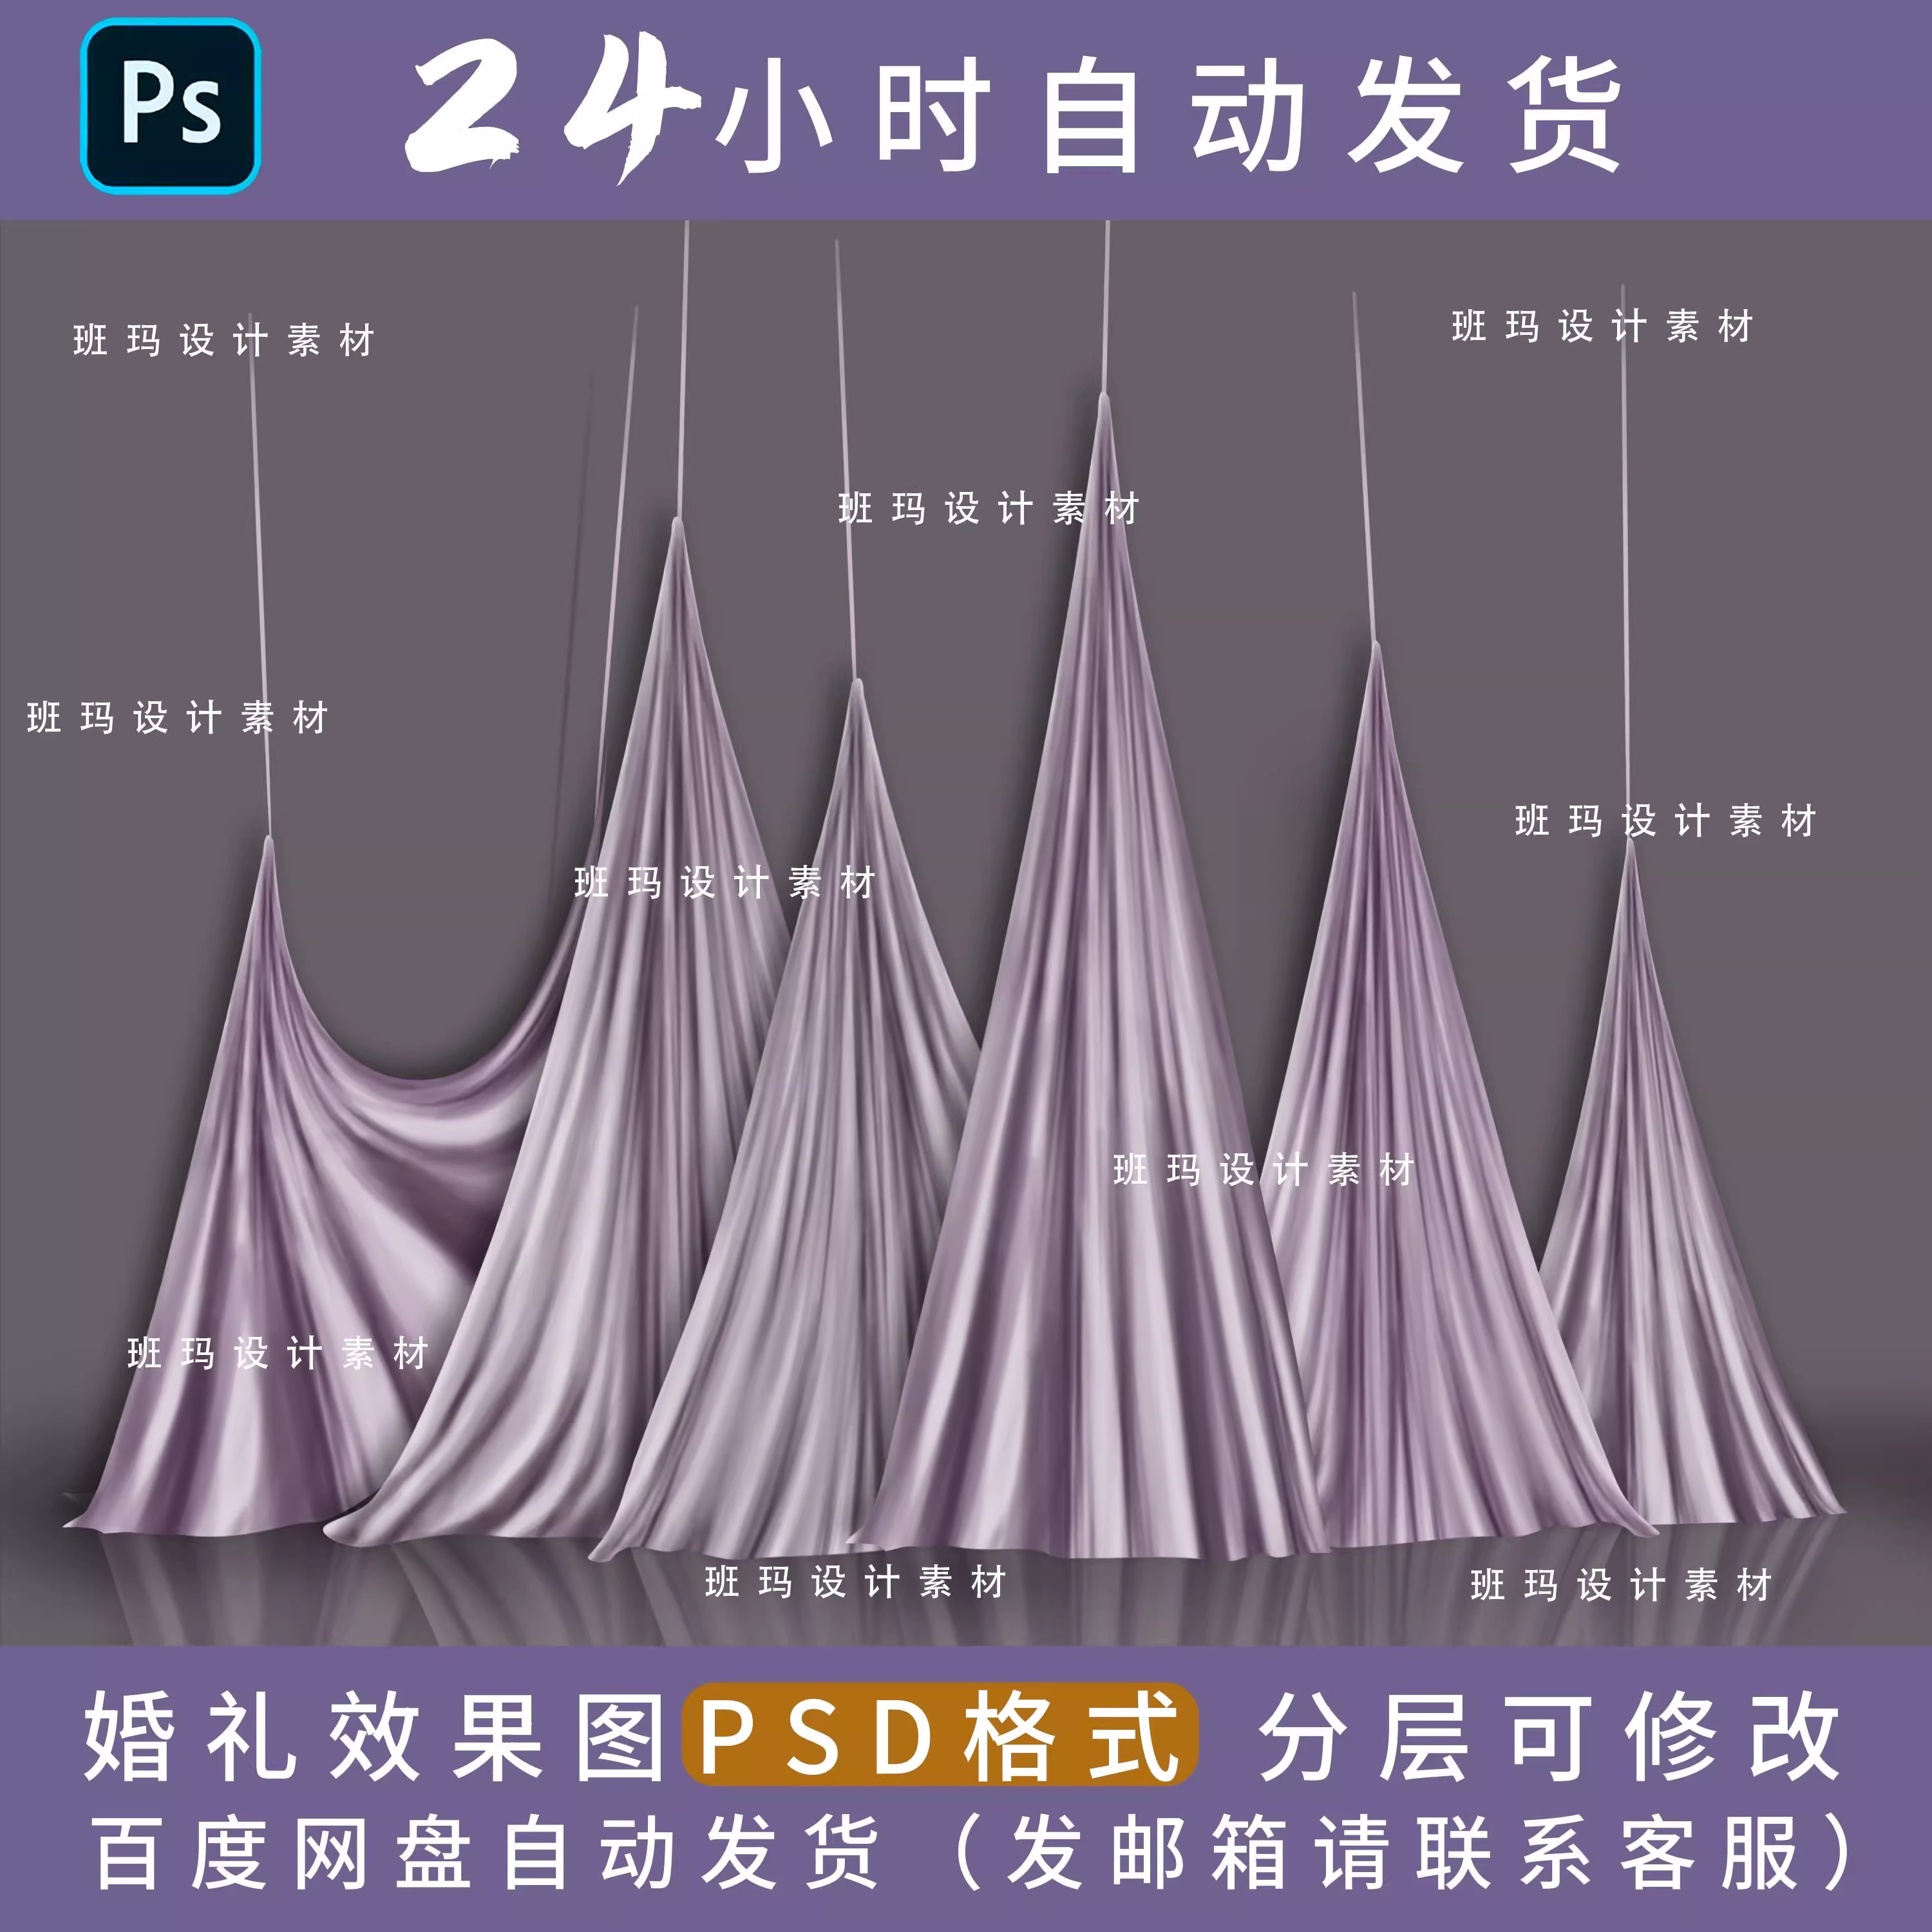 韩式紫色婚礼舞台布幔悬挂下垂手绘道具背景效果图ps素材舞台psd